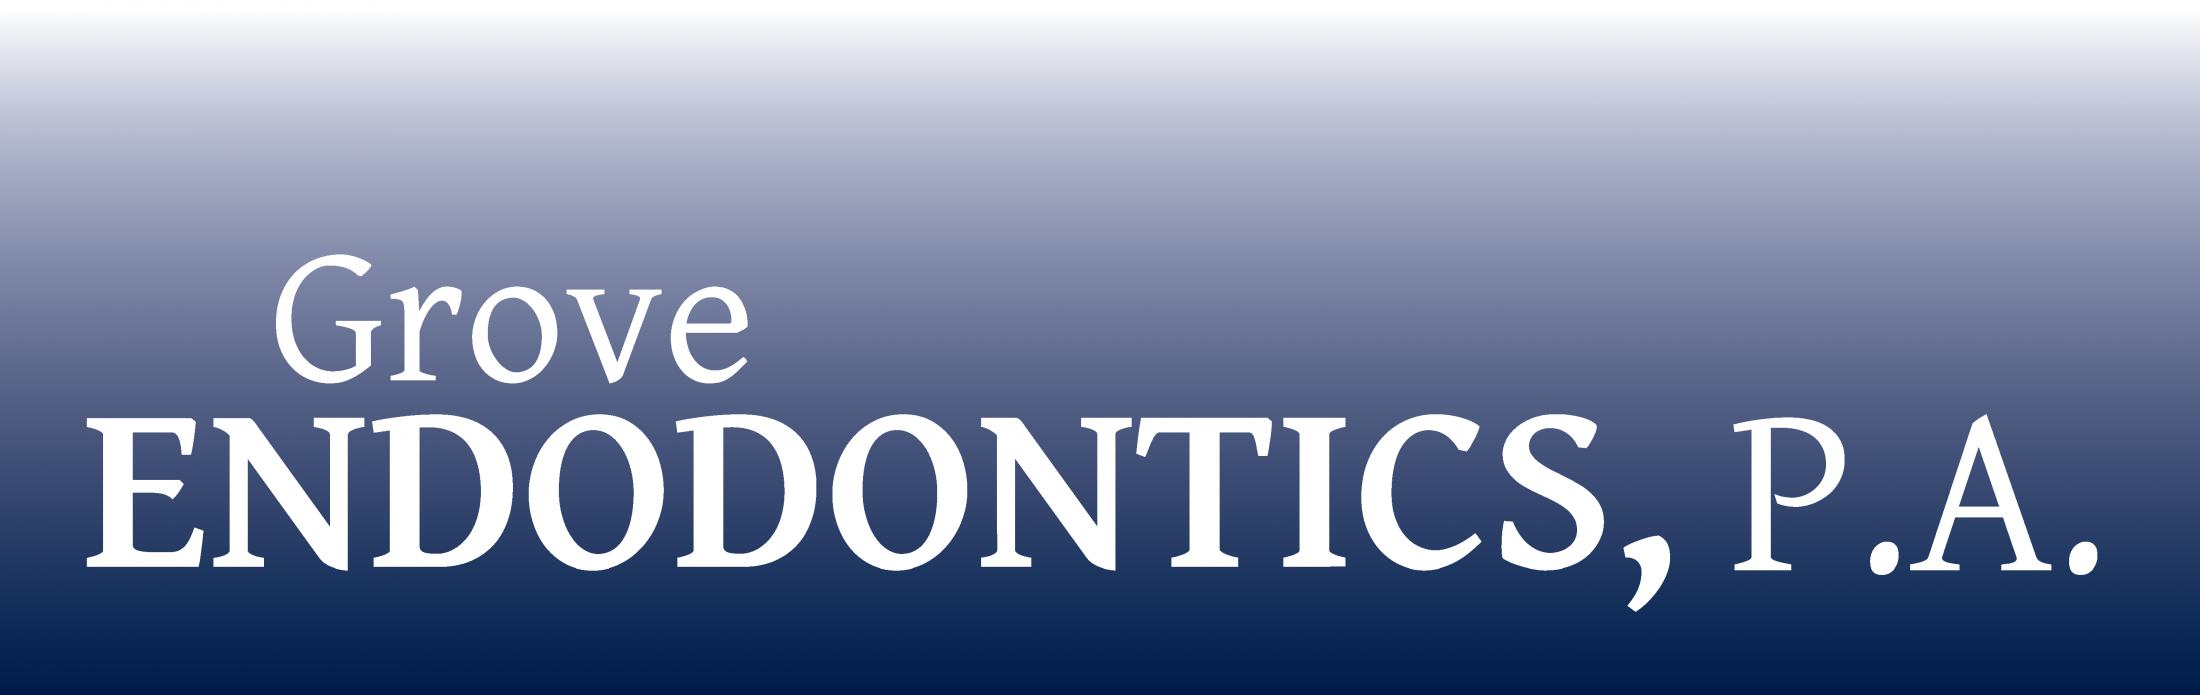 Link to Grove Endodontics, P.A. home page